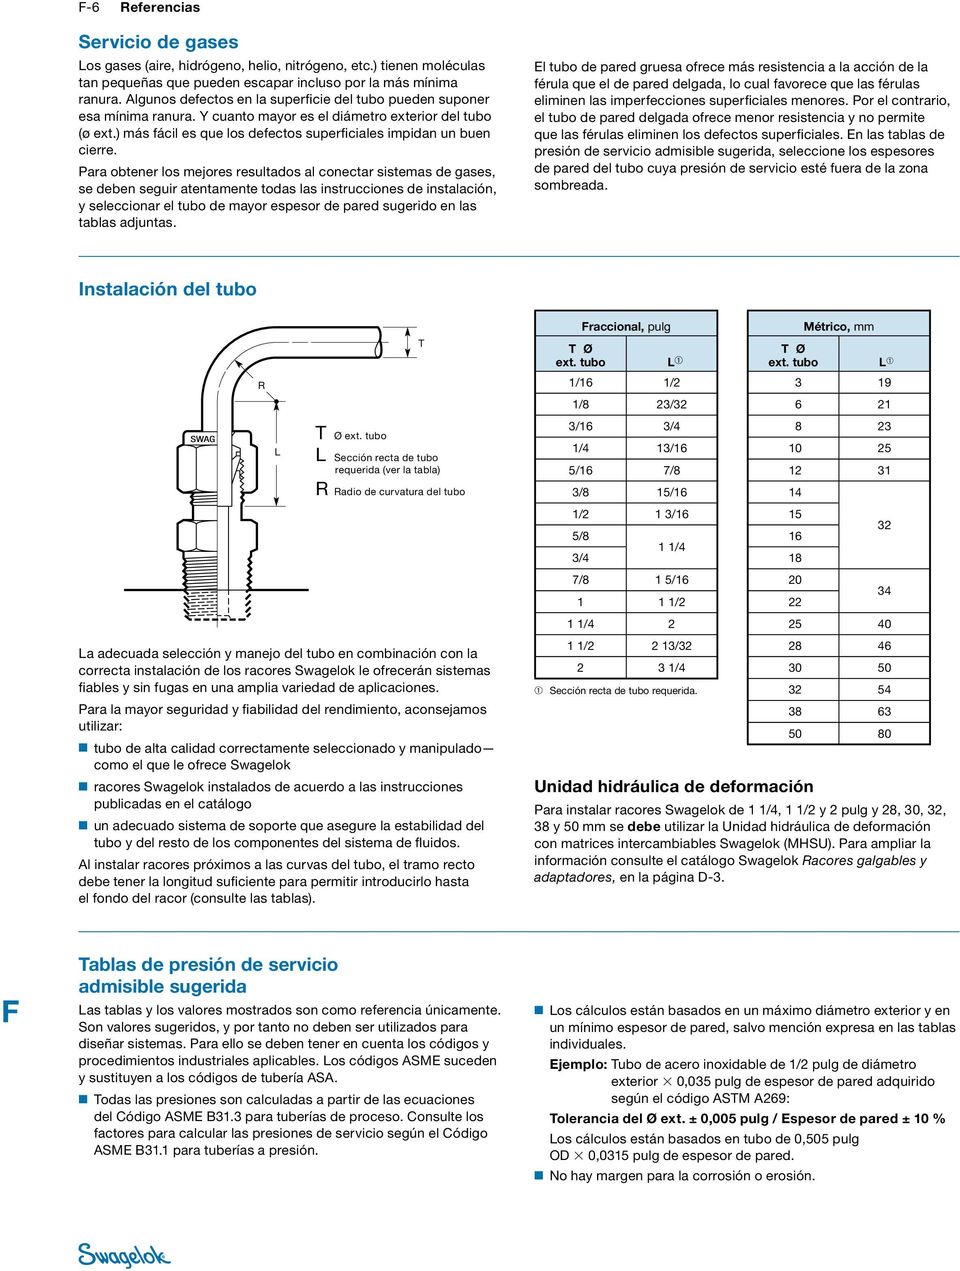 Para obtener los mejores resultados al conectar sistemas de gases, se deben seguir atentamente todas las instrucciones de instalación, y seleccionar el tubo de mayor espesor de pared sugerido en las